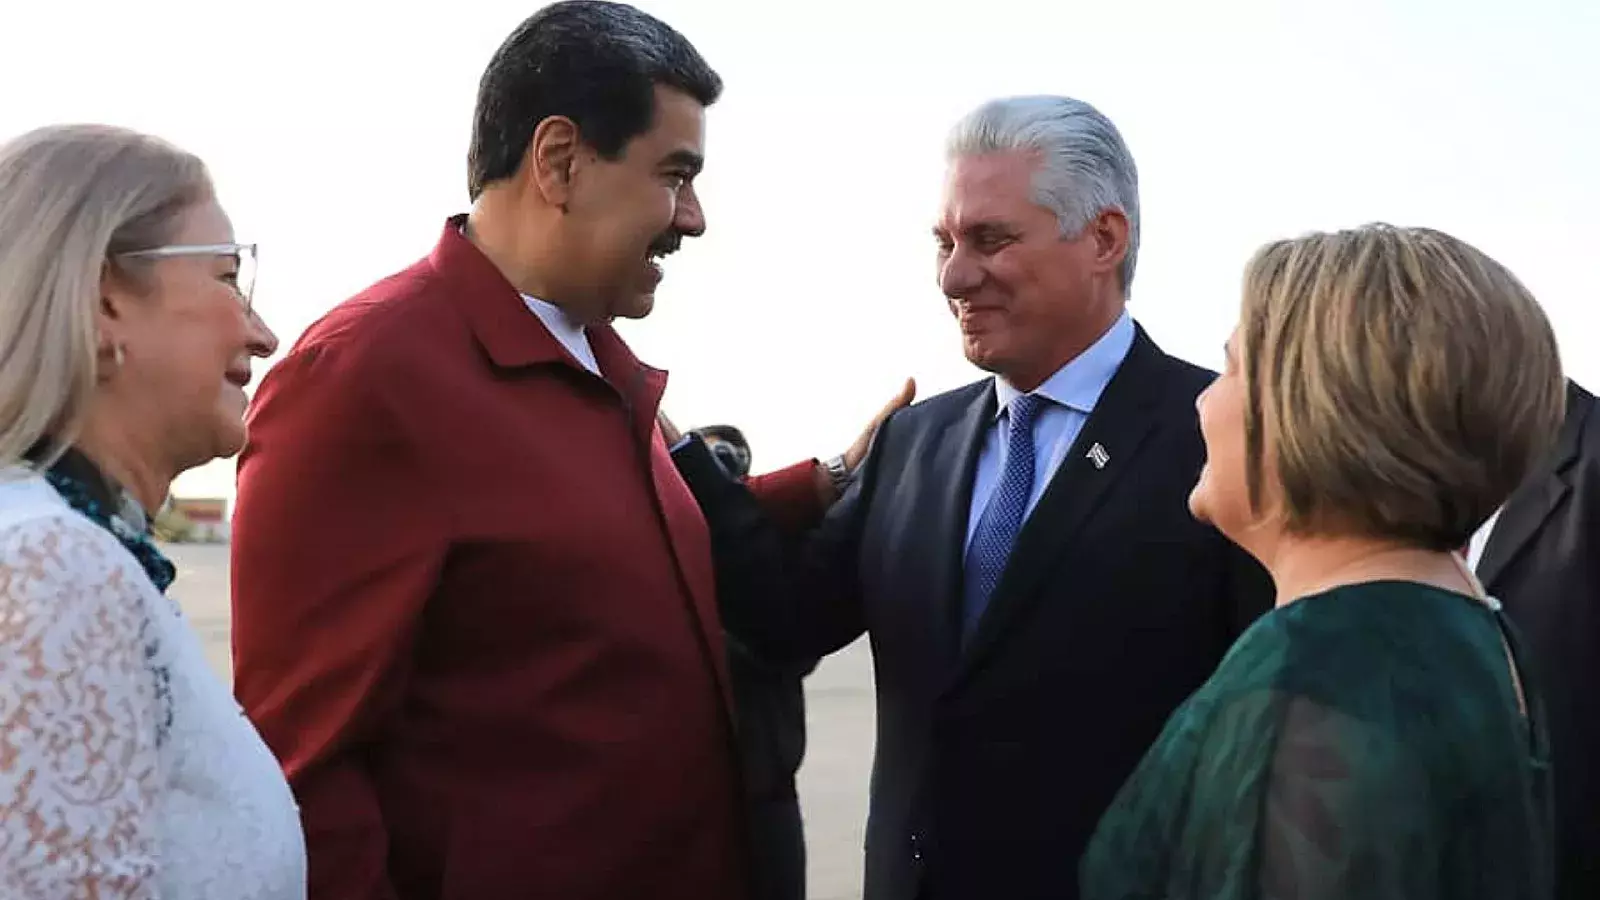 Presidencia confirmó una "escala" en Caracas, tras el viaje del gobernante a Argentina